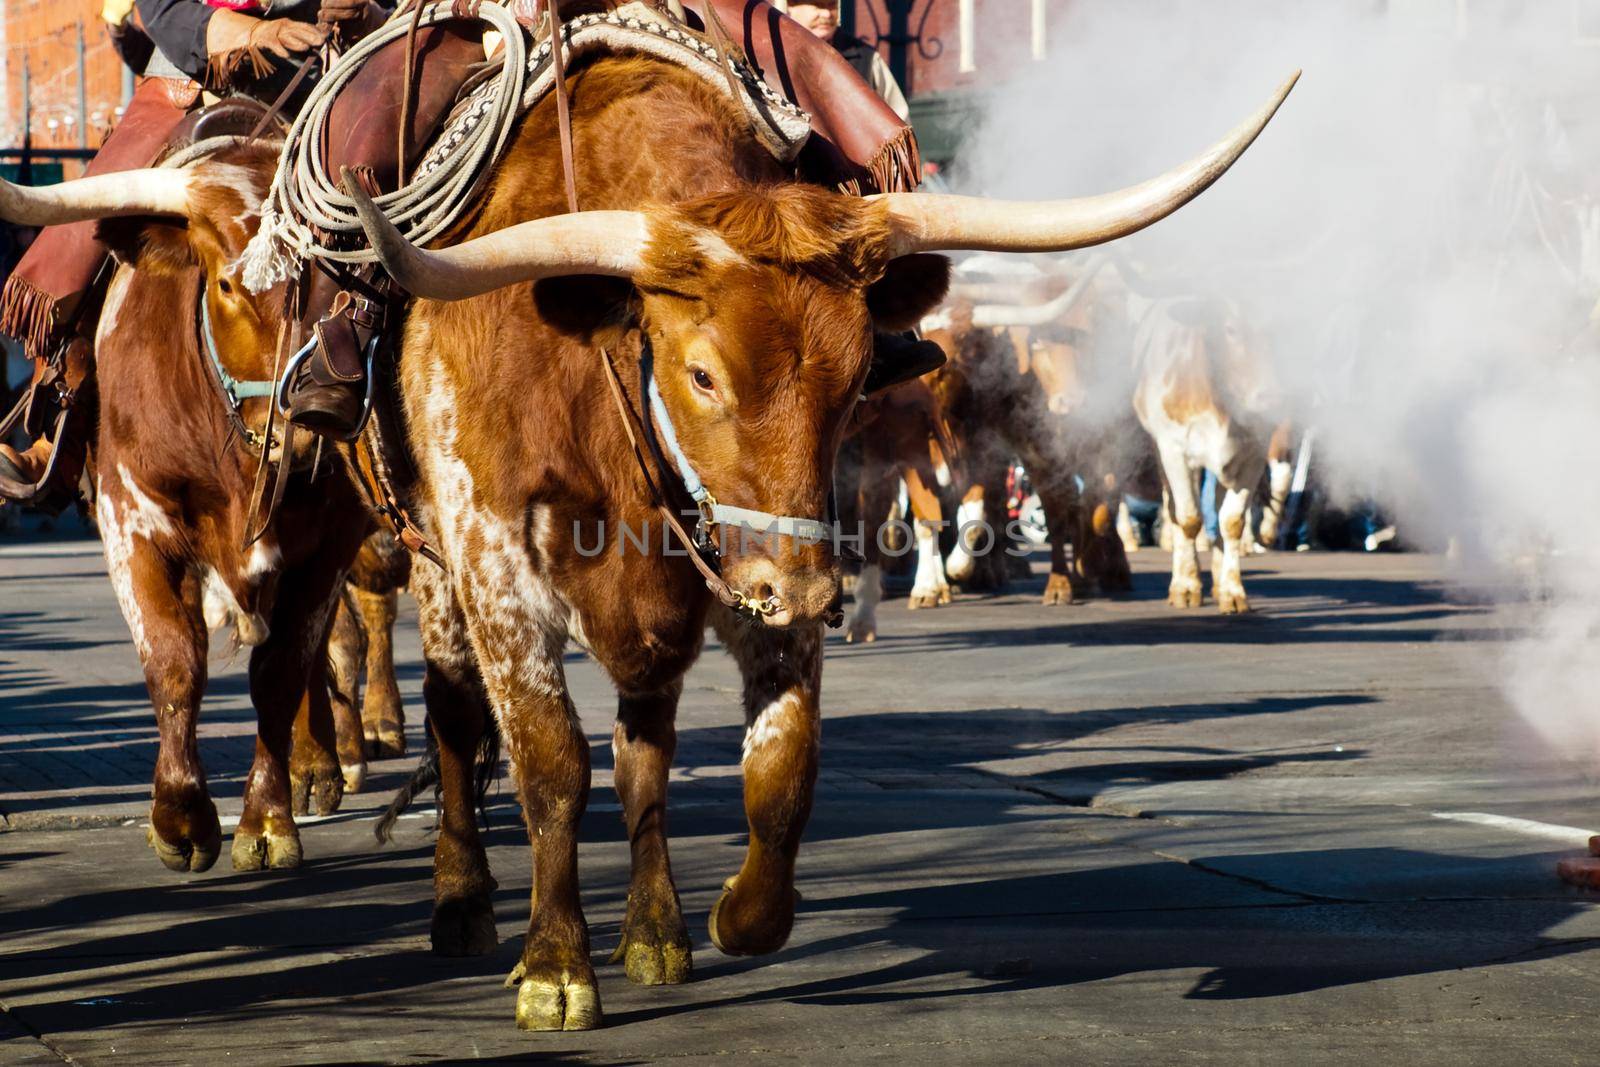 Texas Longhorns at National Western Stock Show Parade. Denver, Colorado.